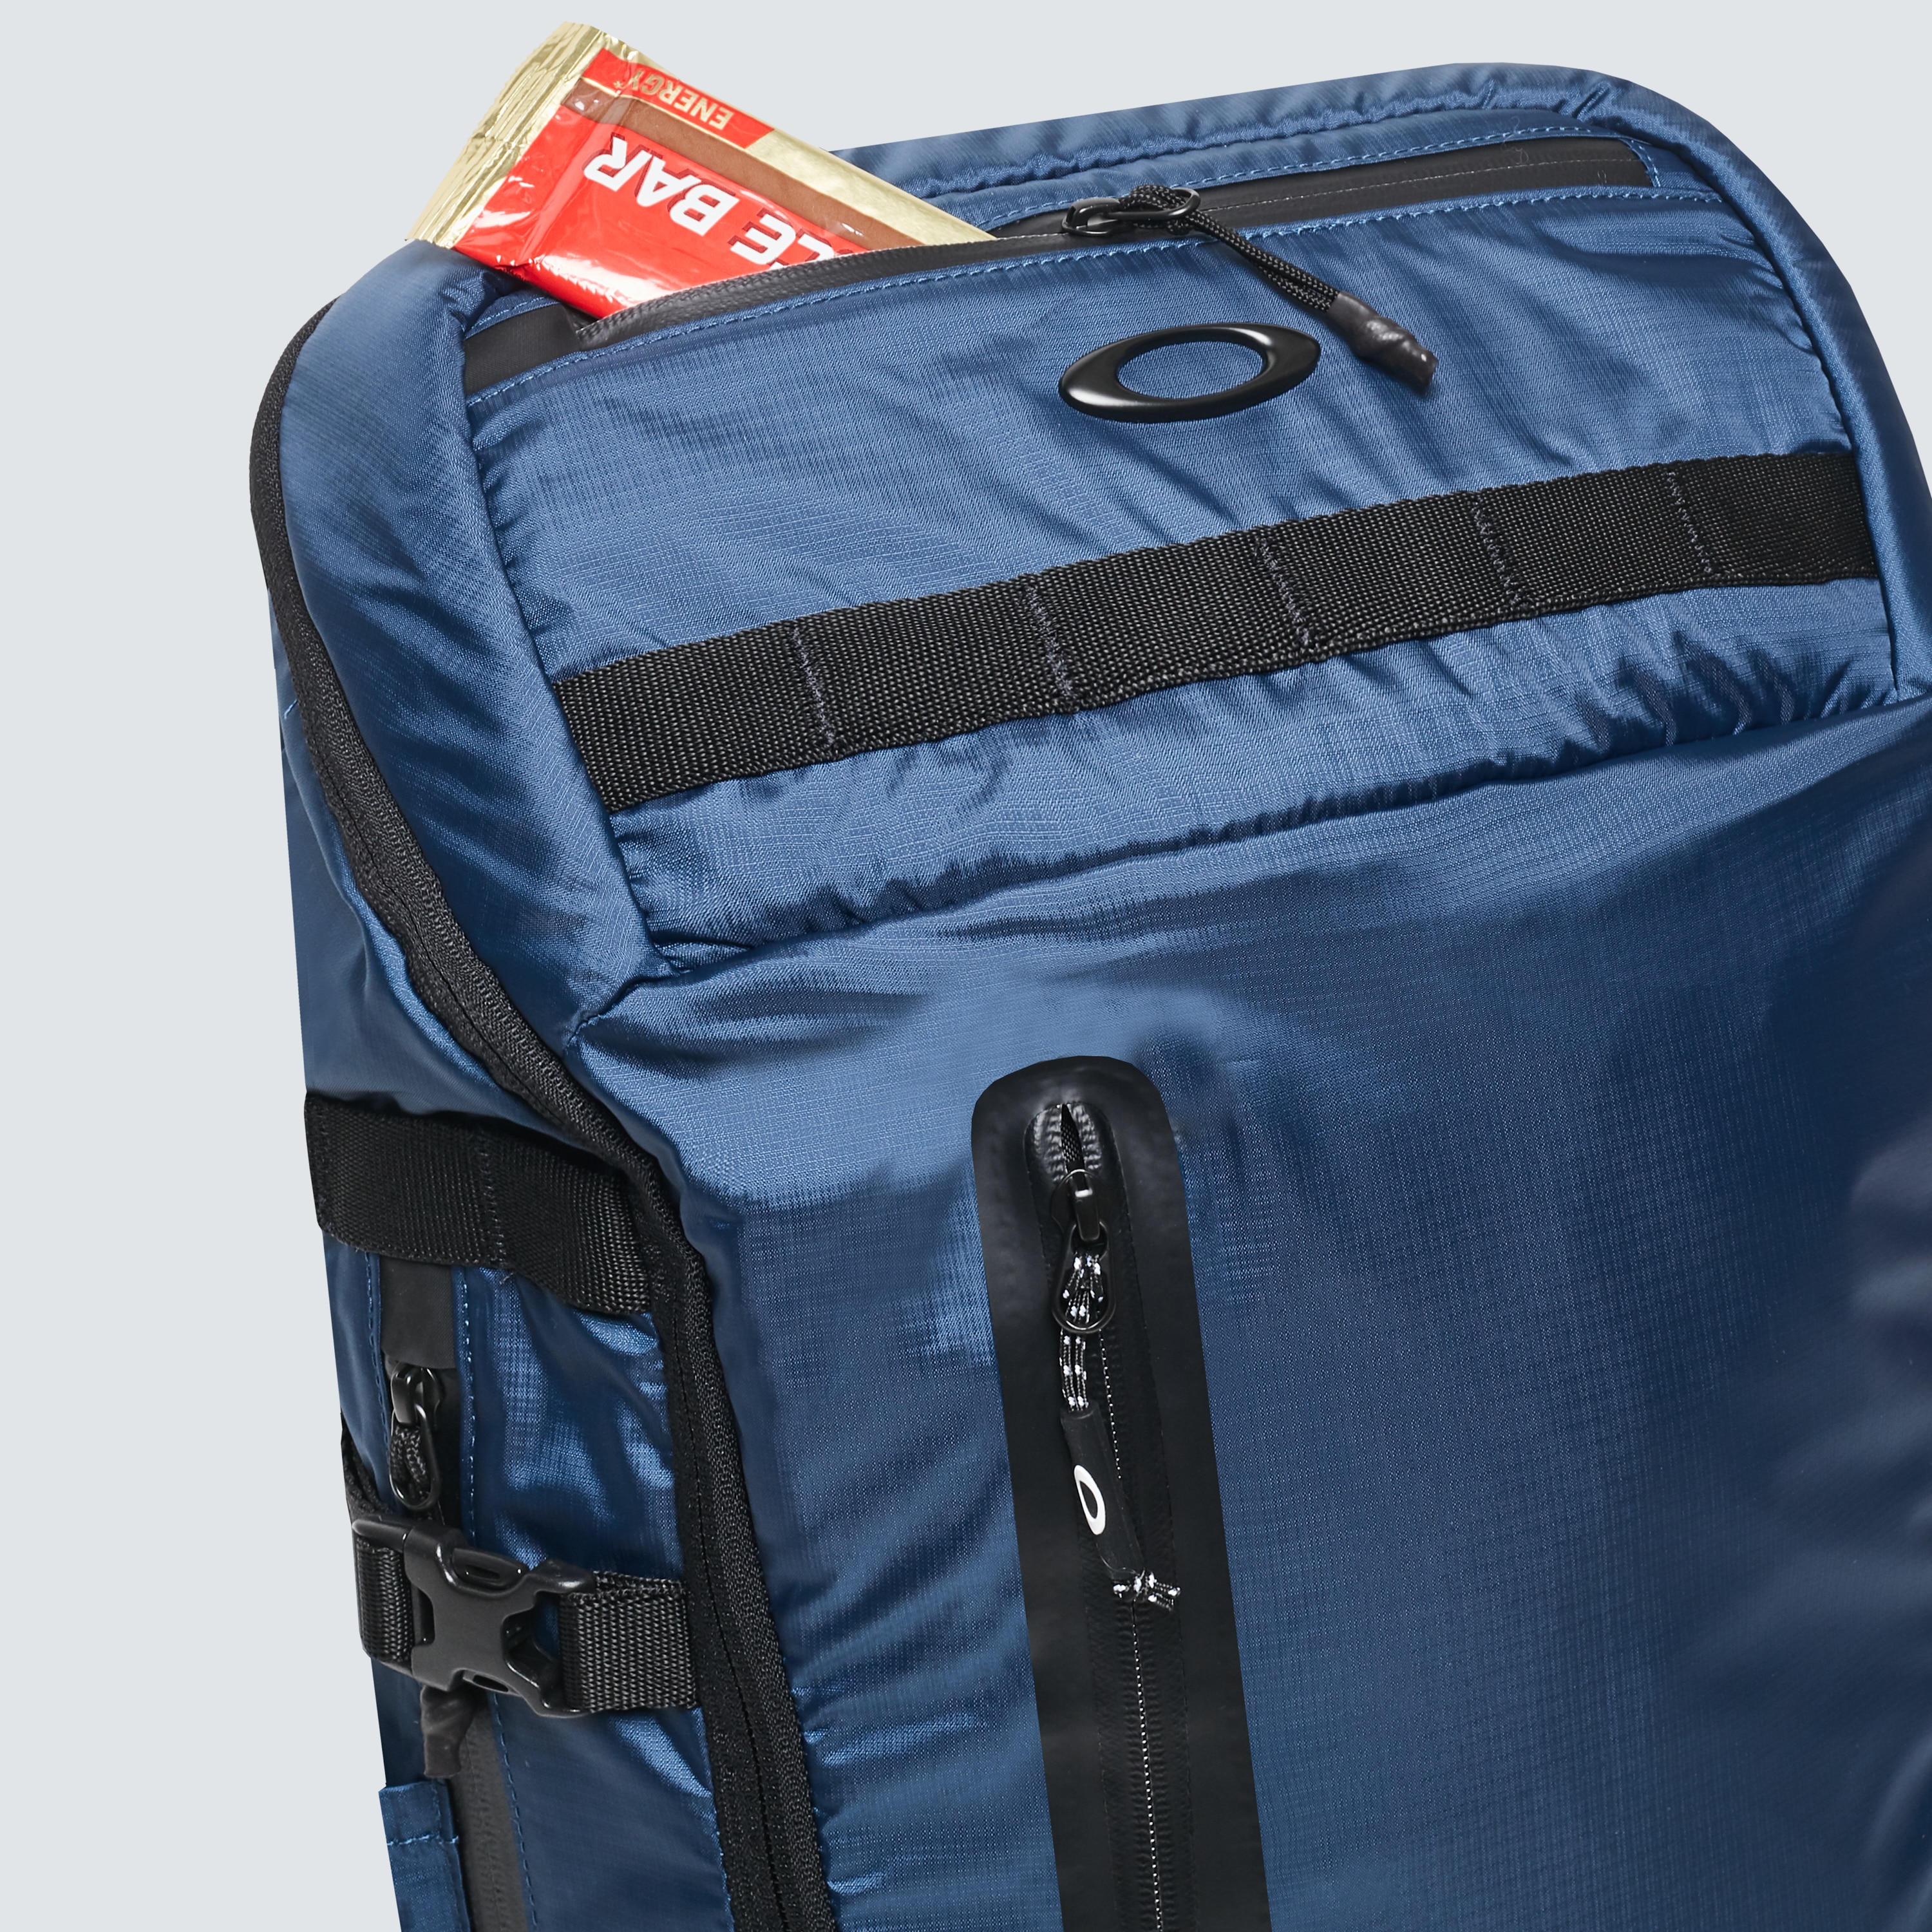 oakley backpack warranty